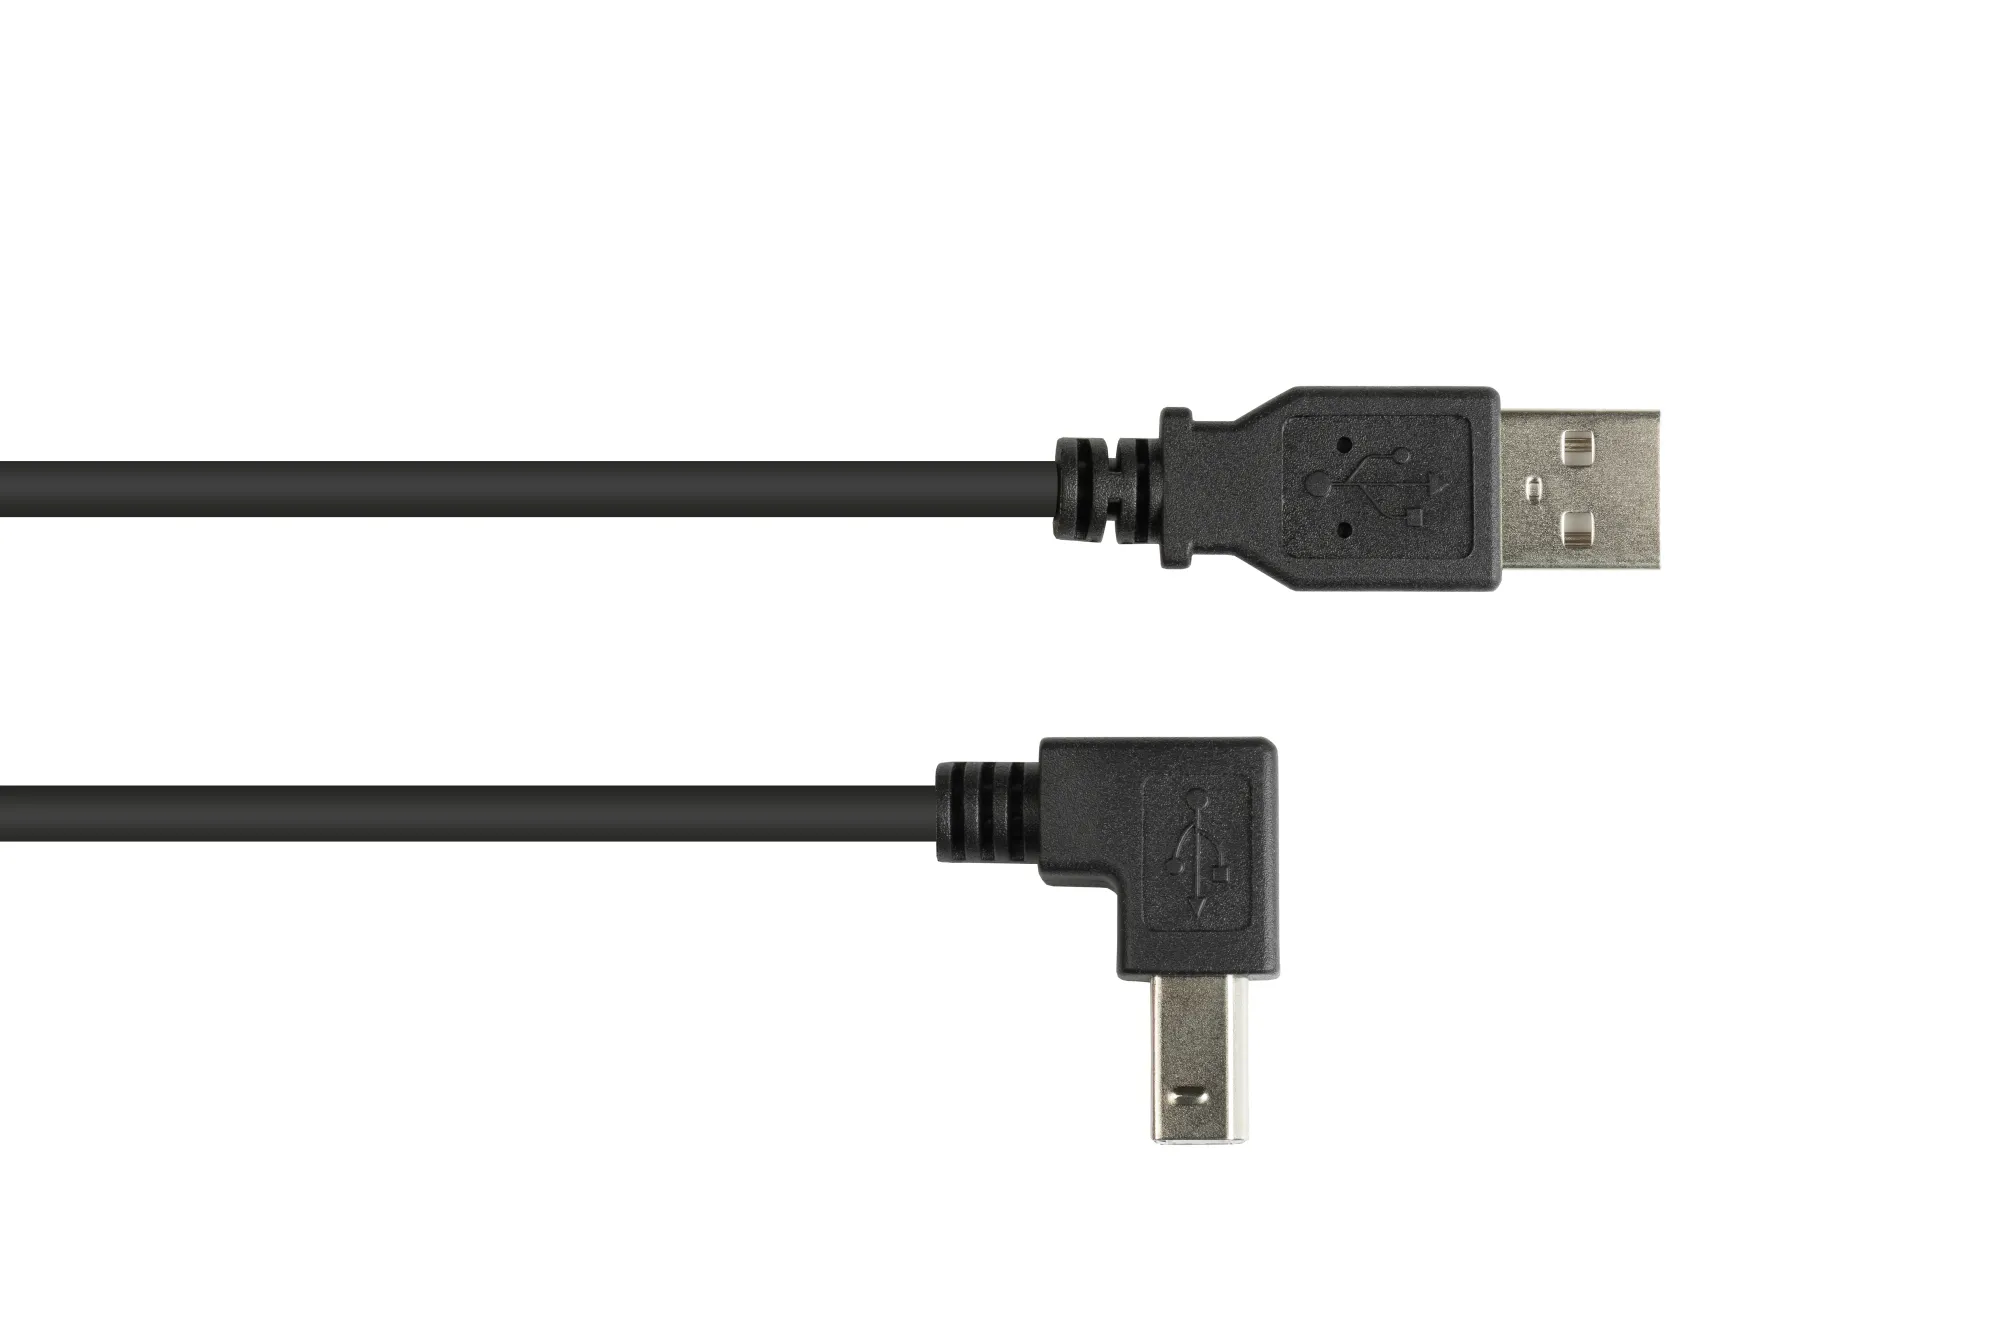 Anschlusskabel USB 2.0 Stecker A an Stecker B nach unten gewinkelt, 5m, Good Connections®